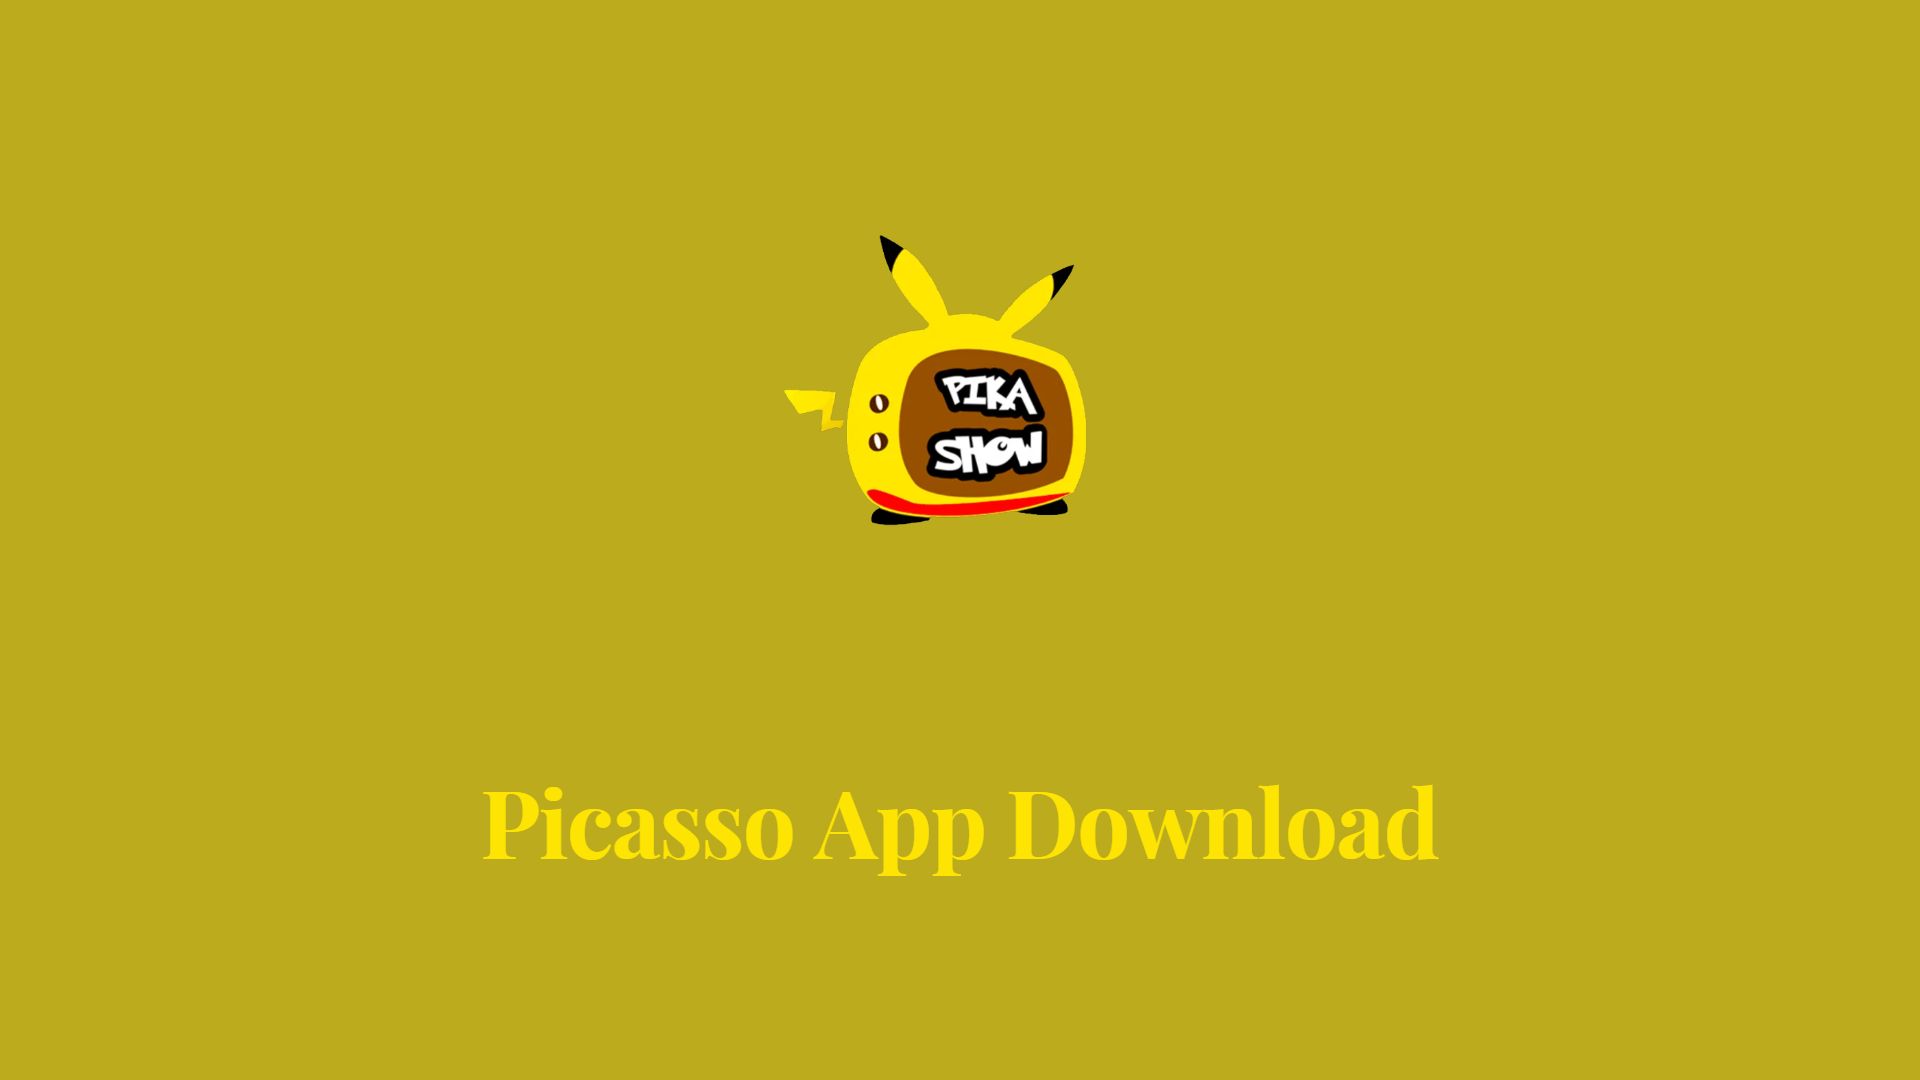 Picasso app